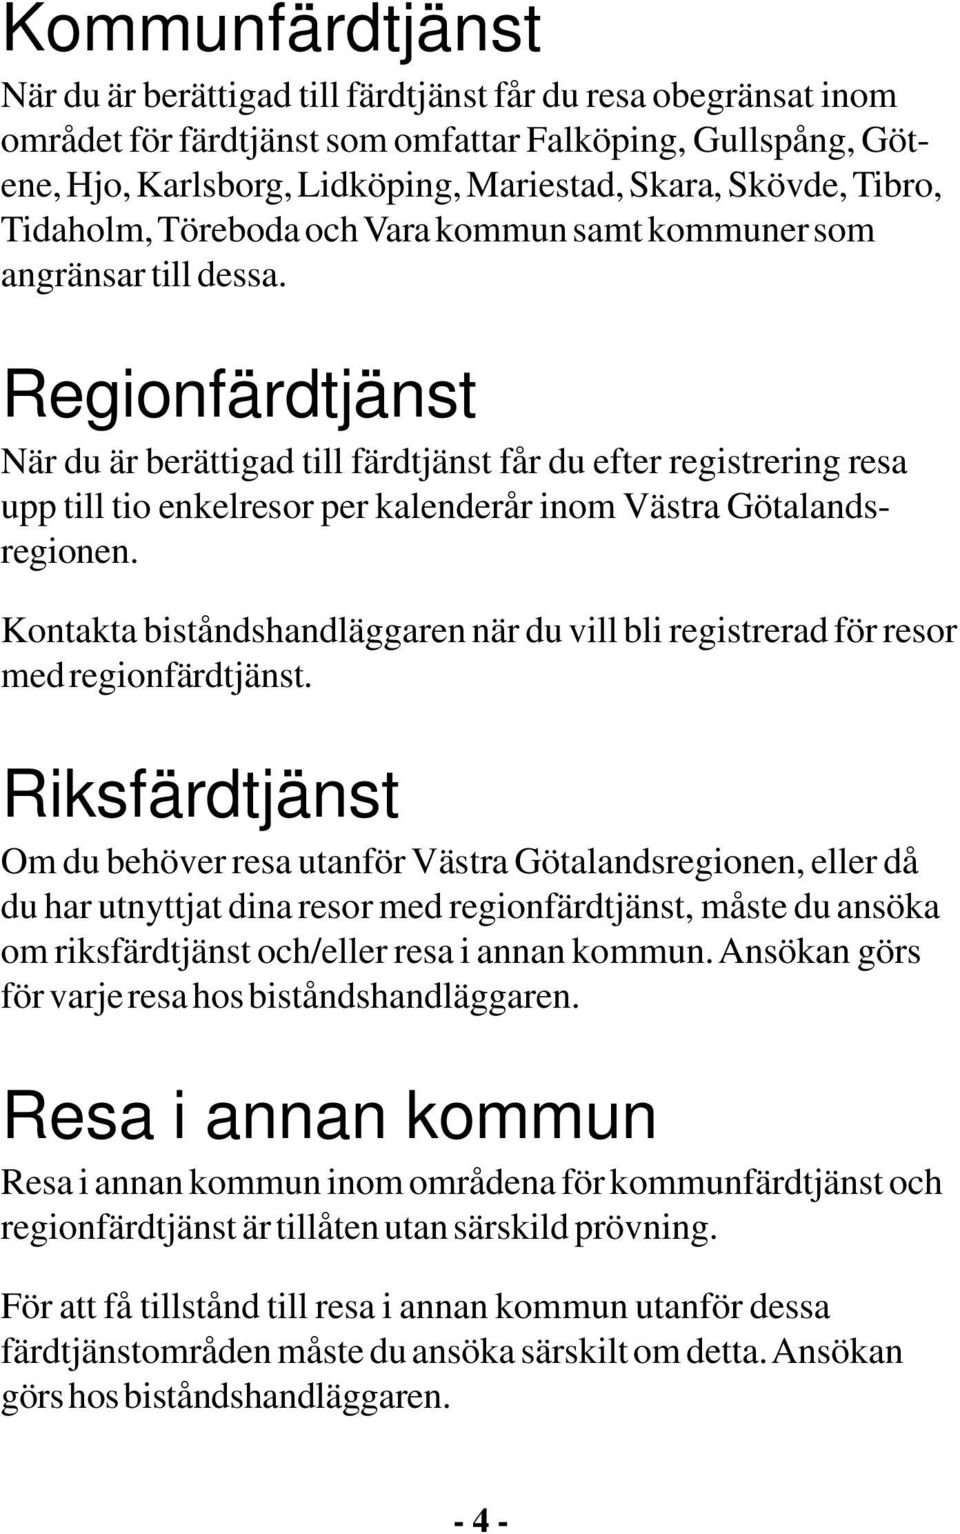 Regionfärdtjänst När du är berättigad till färdtjänst får du efter registrering resa upp till tio enkelresor per kalenderår inom Västra Götalandsregionen.